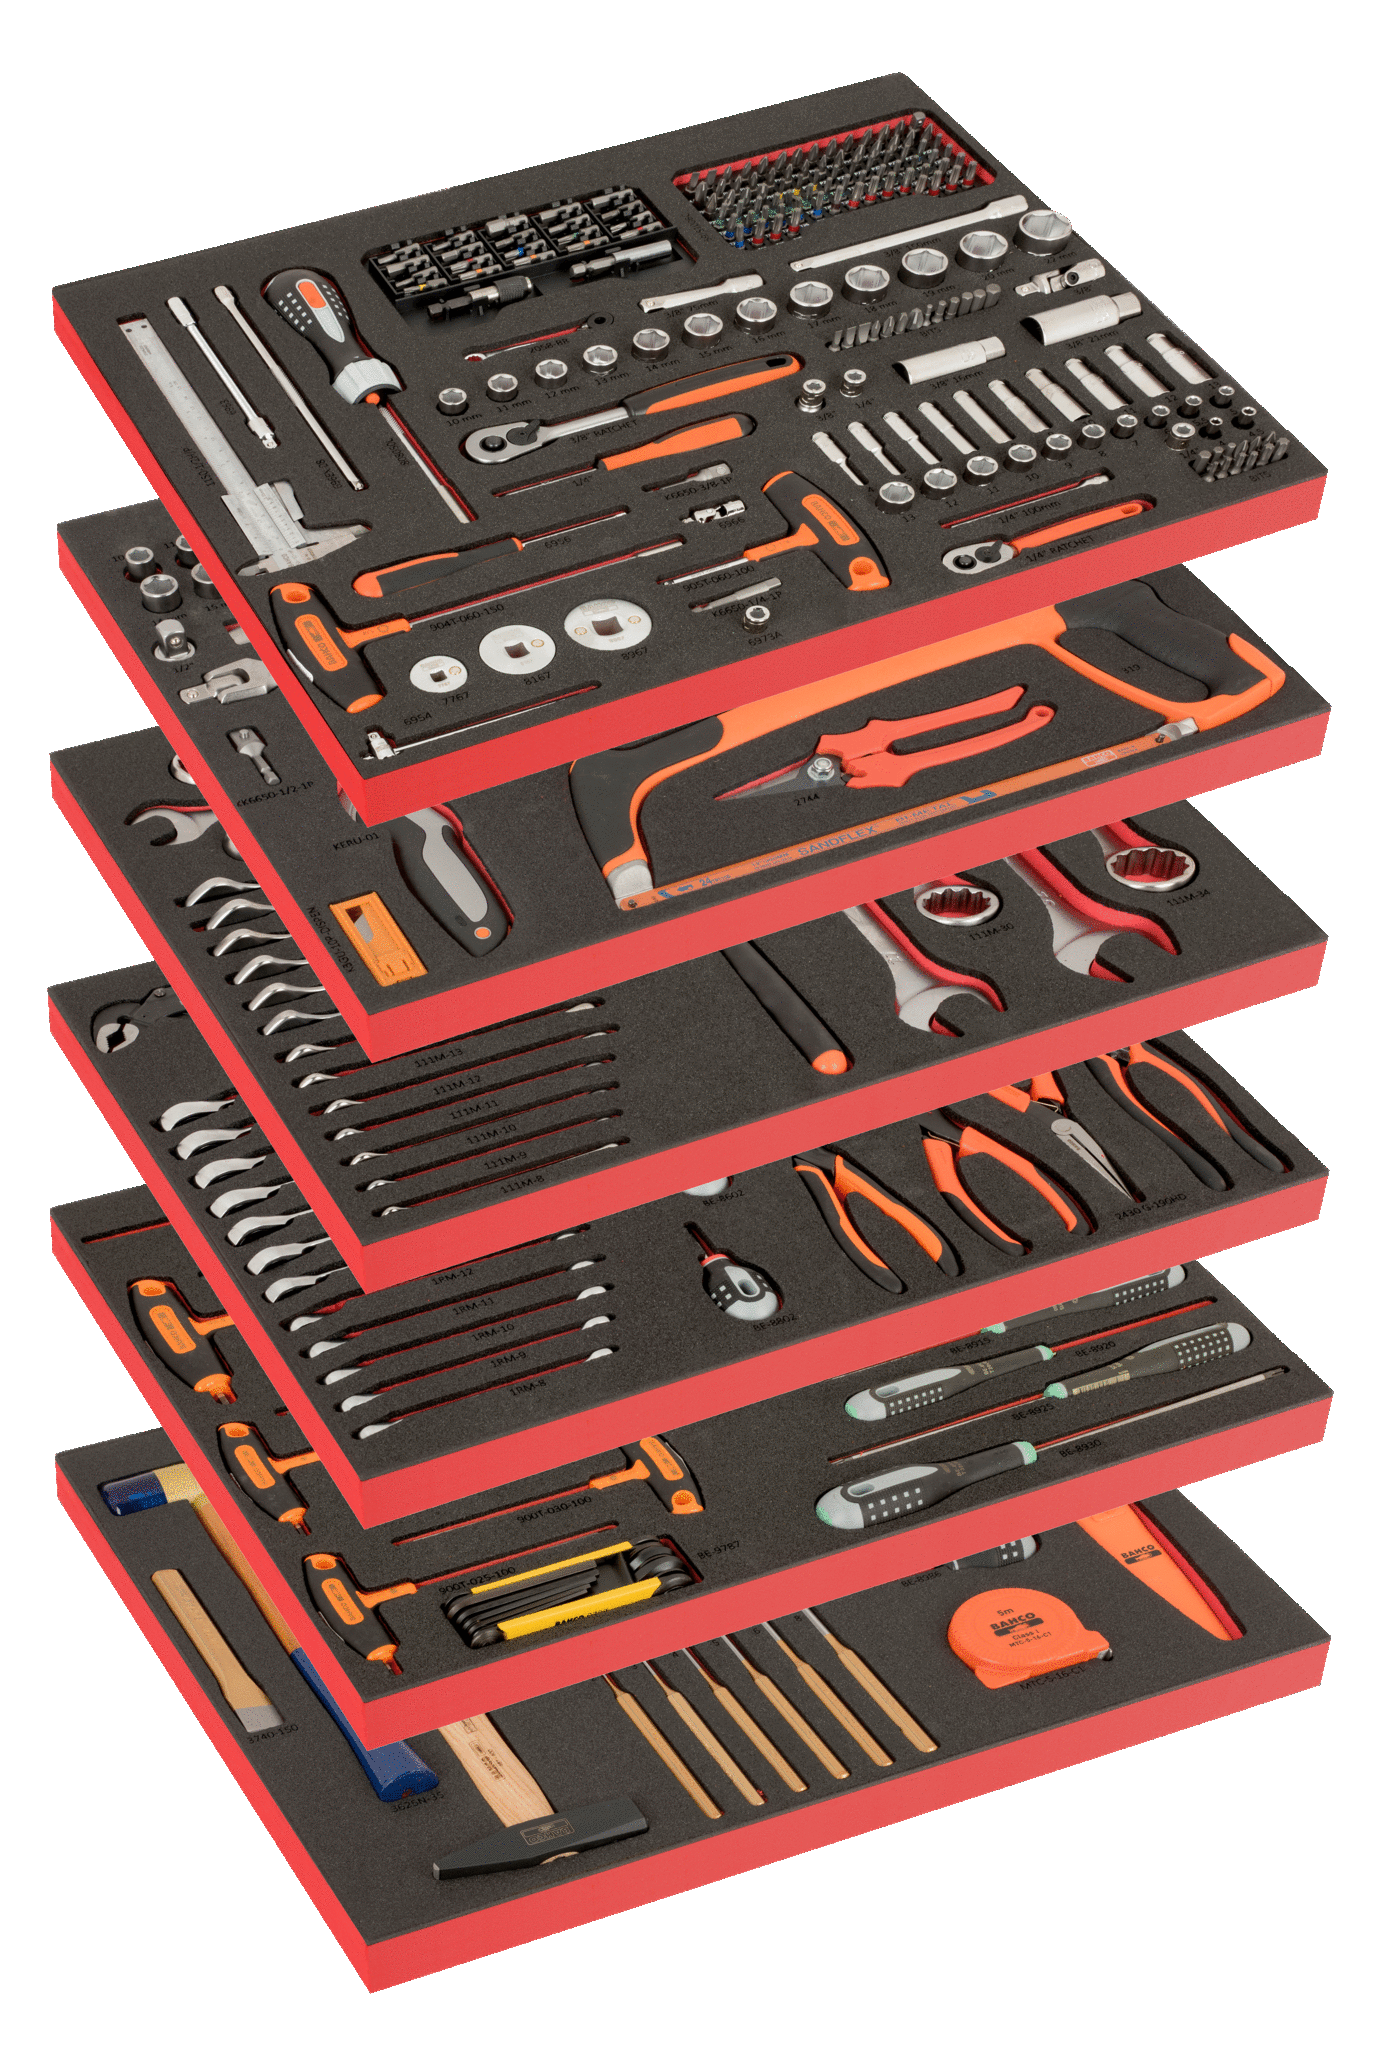 BAHCO - Caisse à outils métallique avec 69 outils à usage général dans  modules mousse